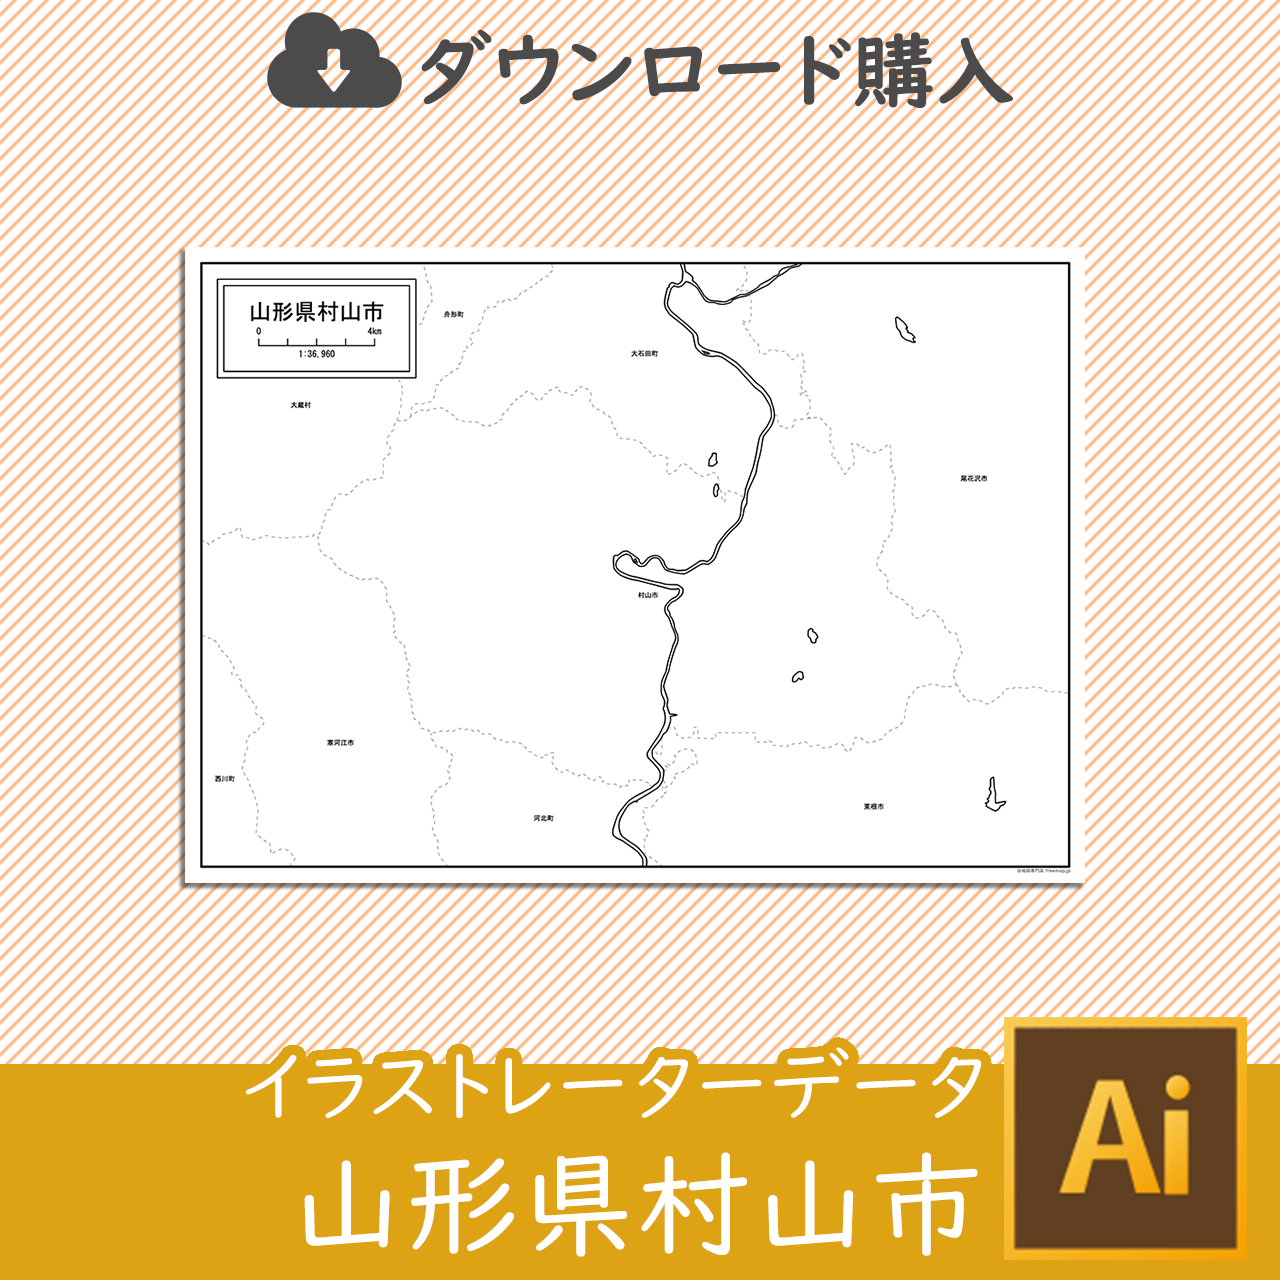 村山市のaiデータのサムネイル画像